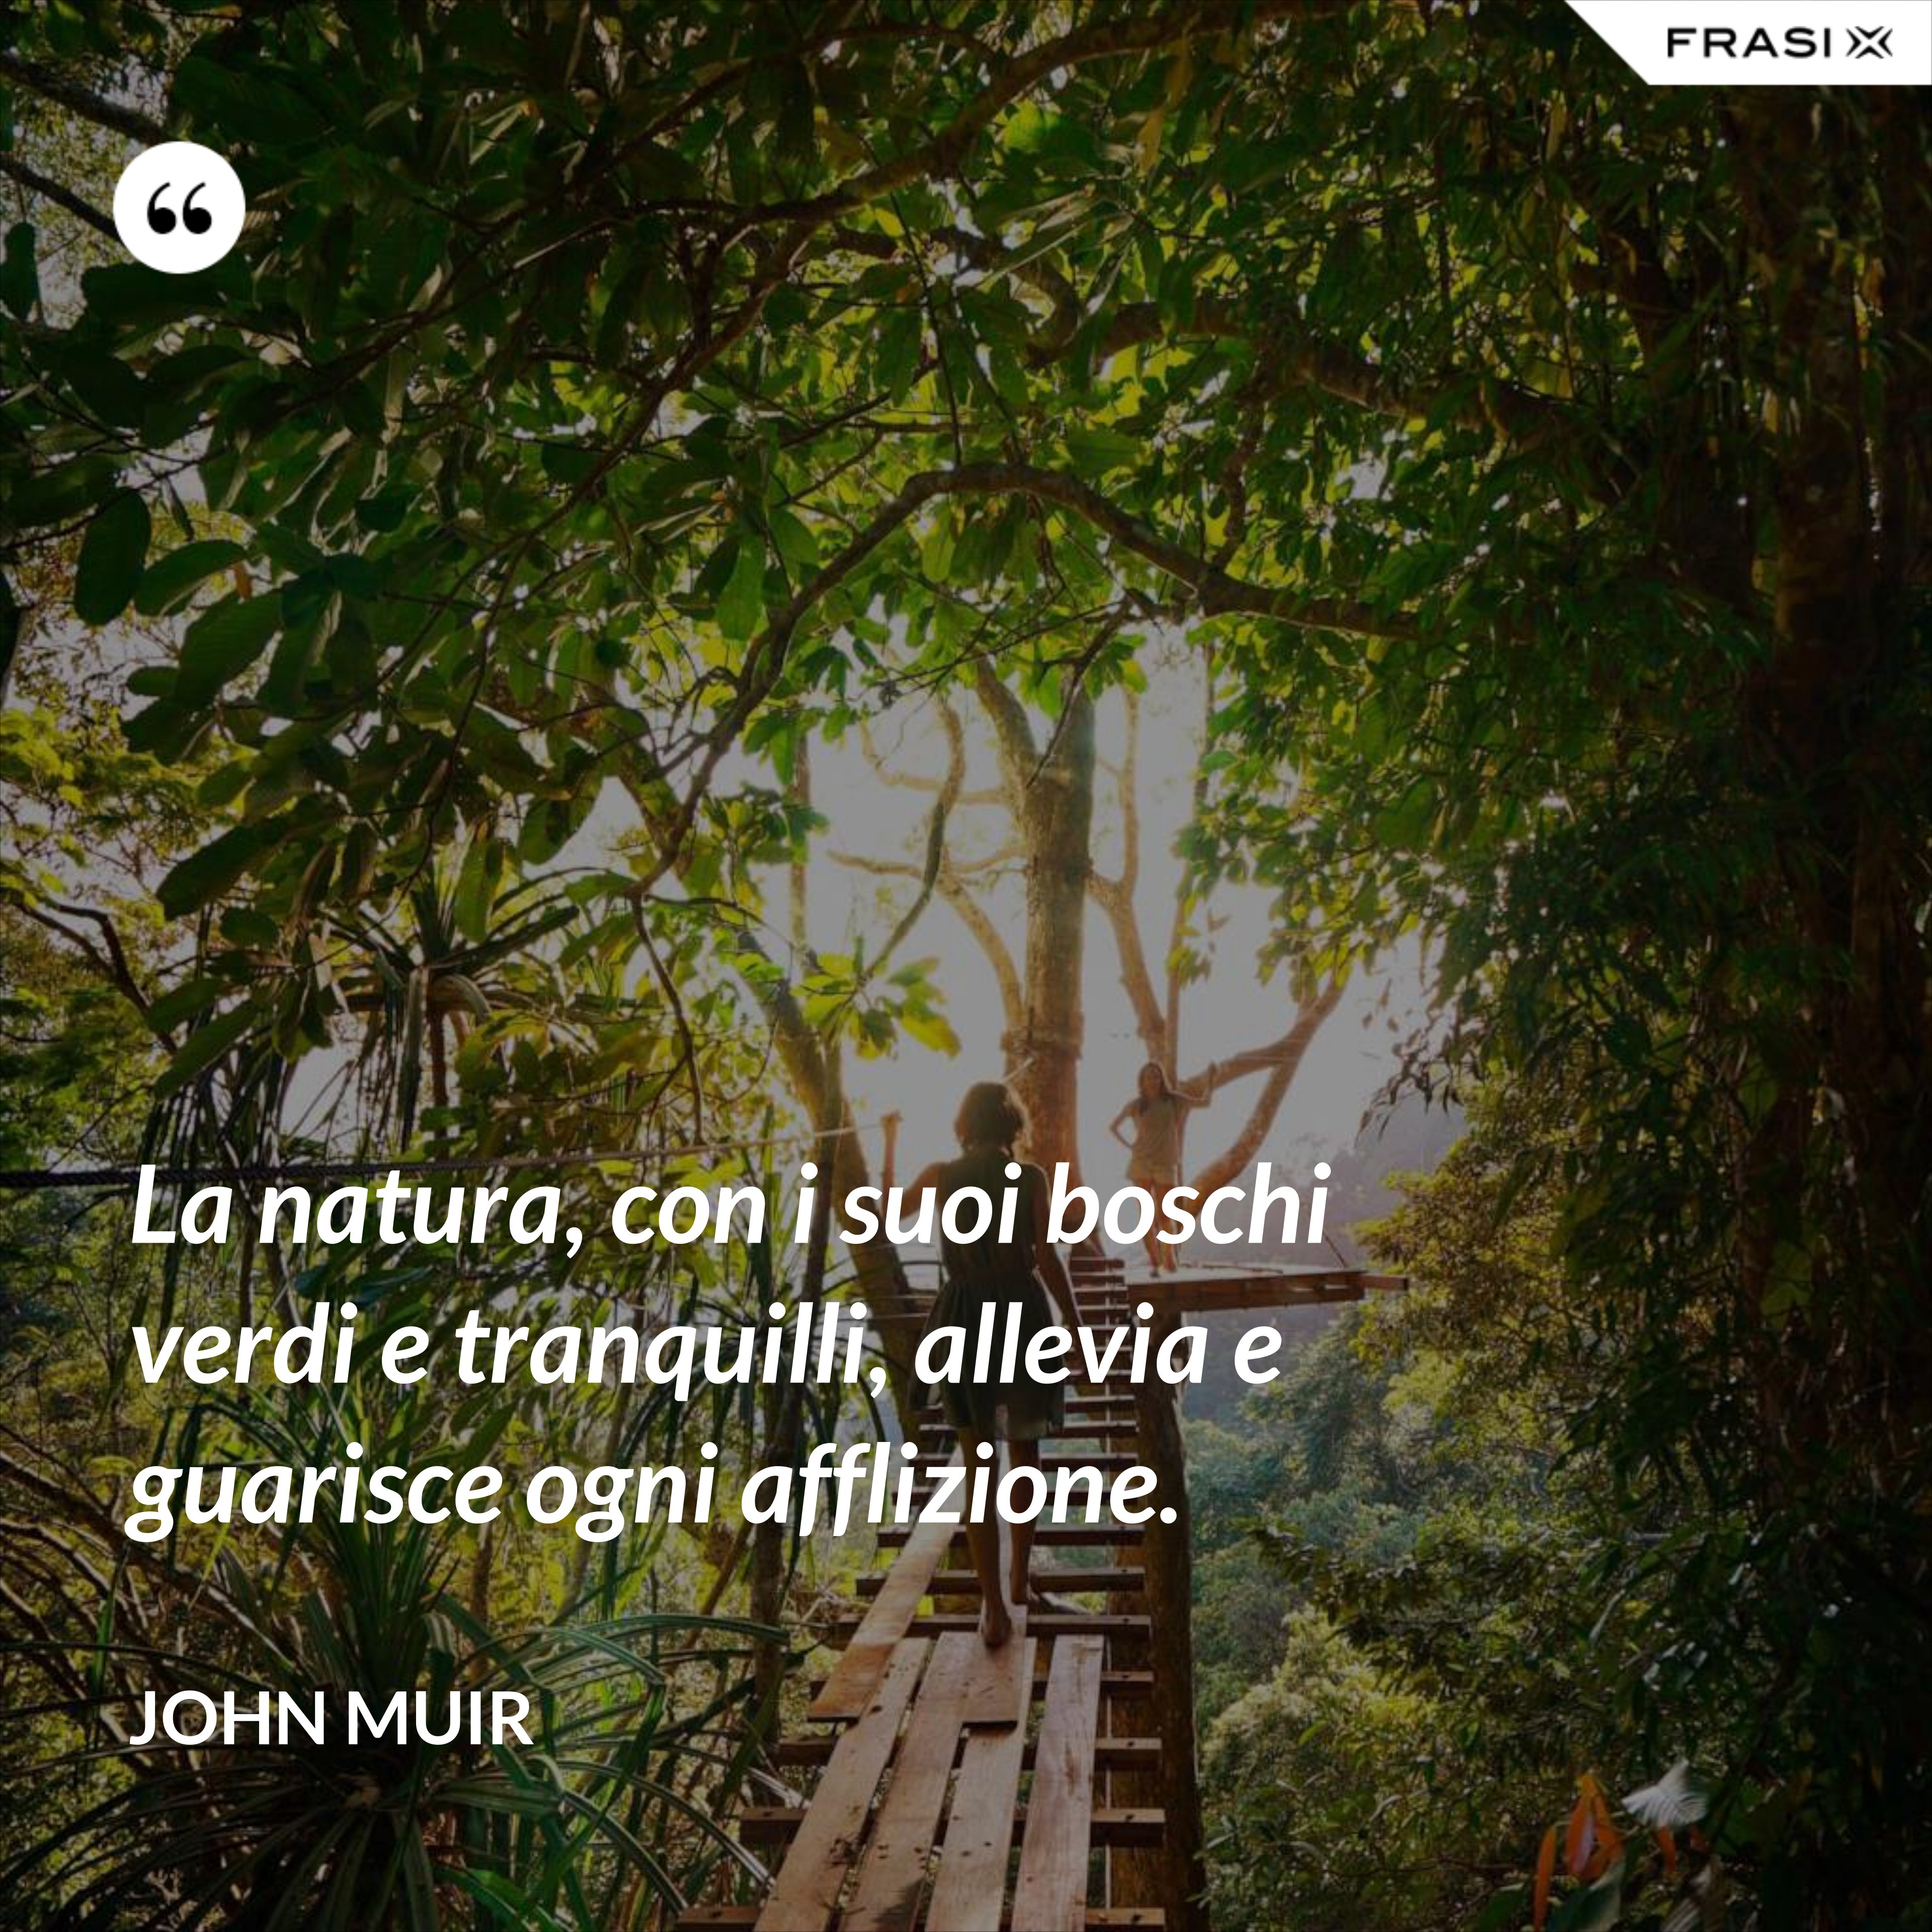 La natura, con i suoi boschi verdi e tranquilli, allevia e guarisce ogni afflizione. - John Muir